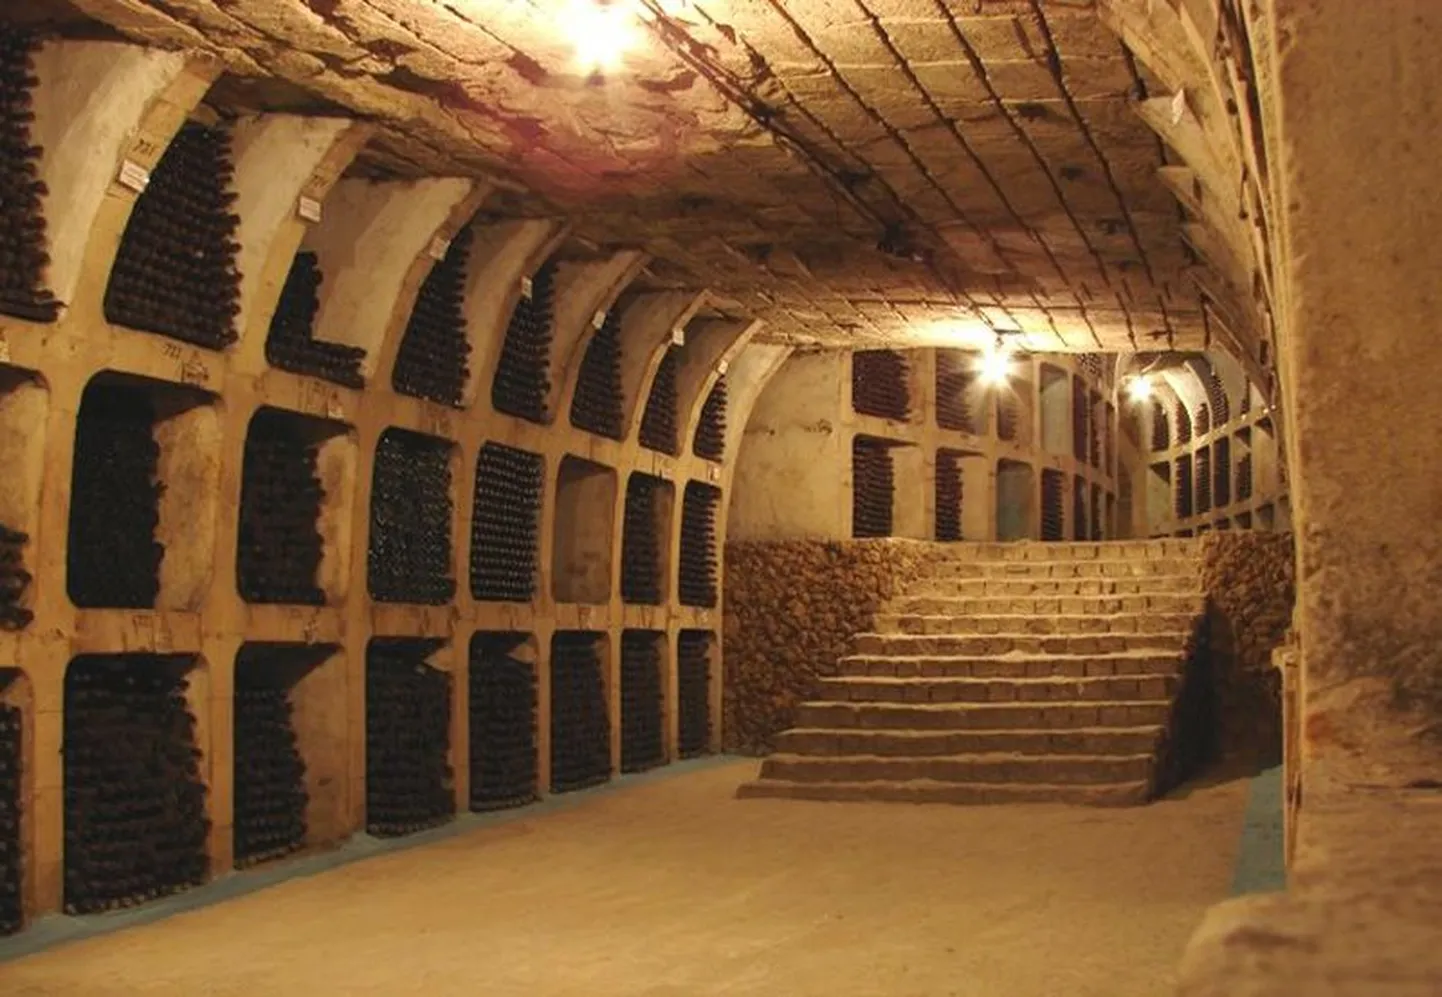 Guinnessi rekordite raamatusse kantud Milestii Mici veinikelder, mille kogupikkuseks olevat 220 km.